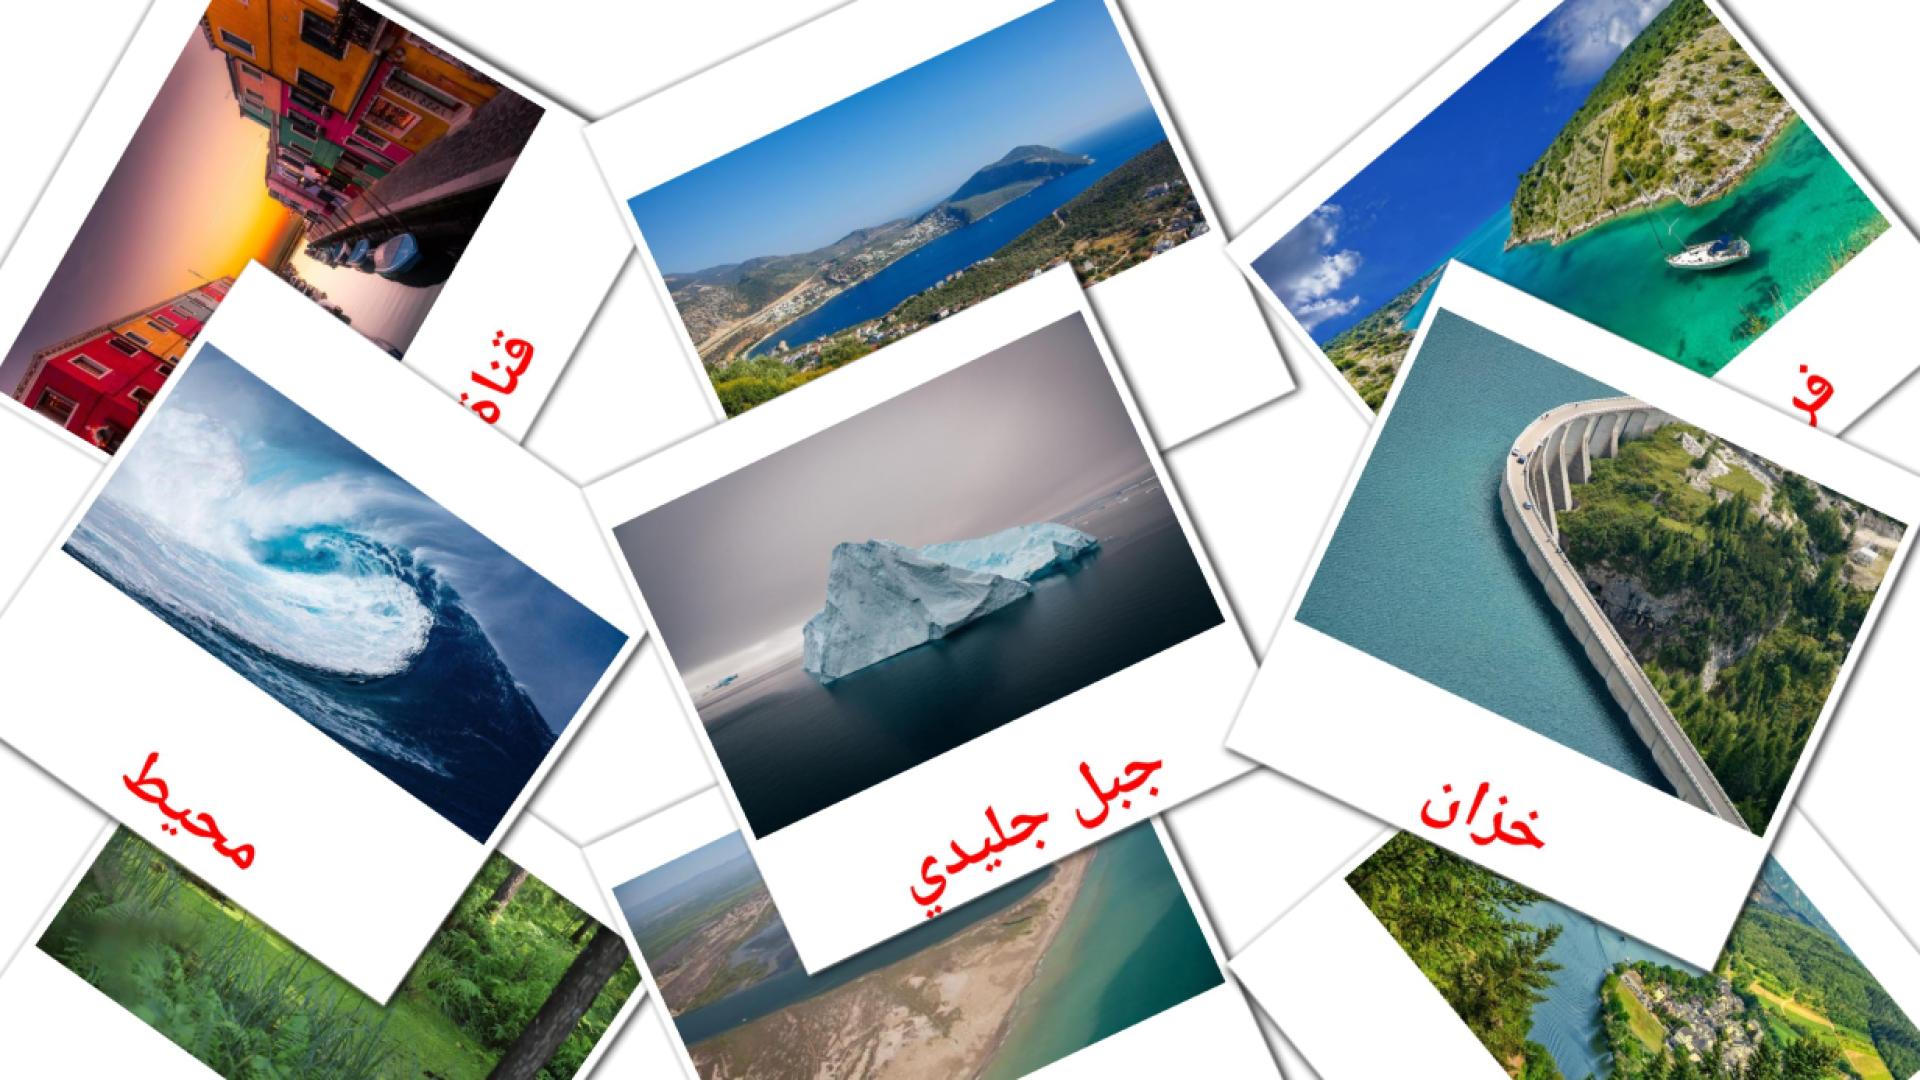 Cuerpos de agua - tarjetas de vocabulario en árabe